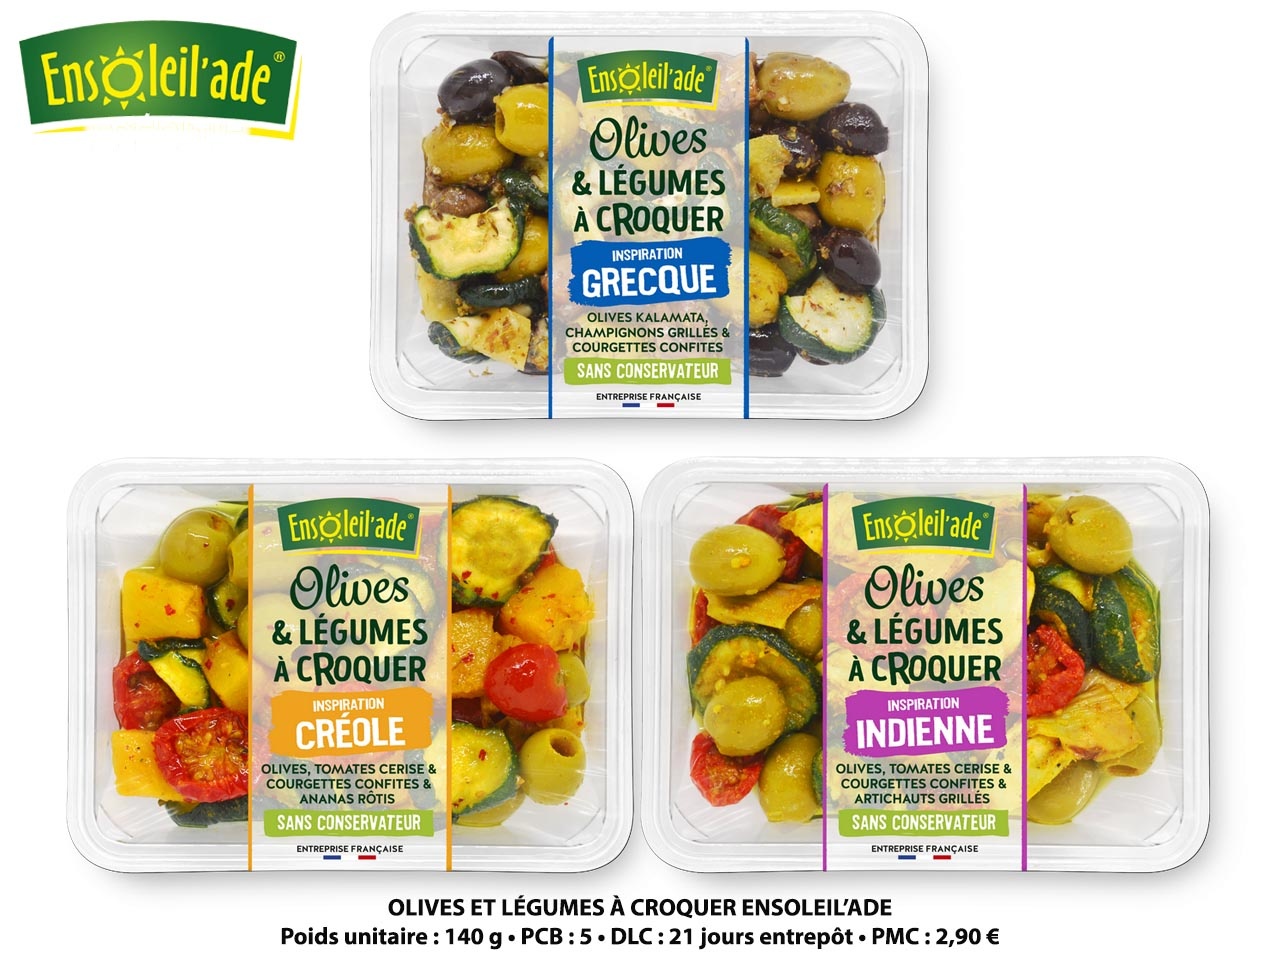 Ensoleil’ade lance de nouveaux mélanges d’olives et légumes à croquer